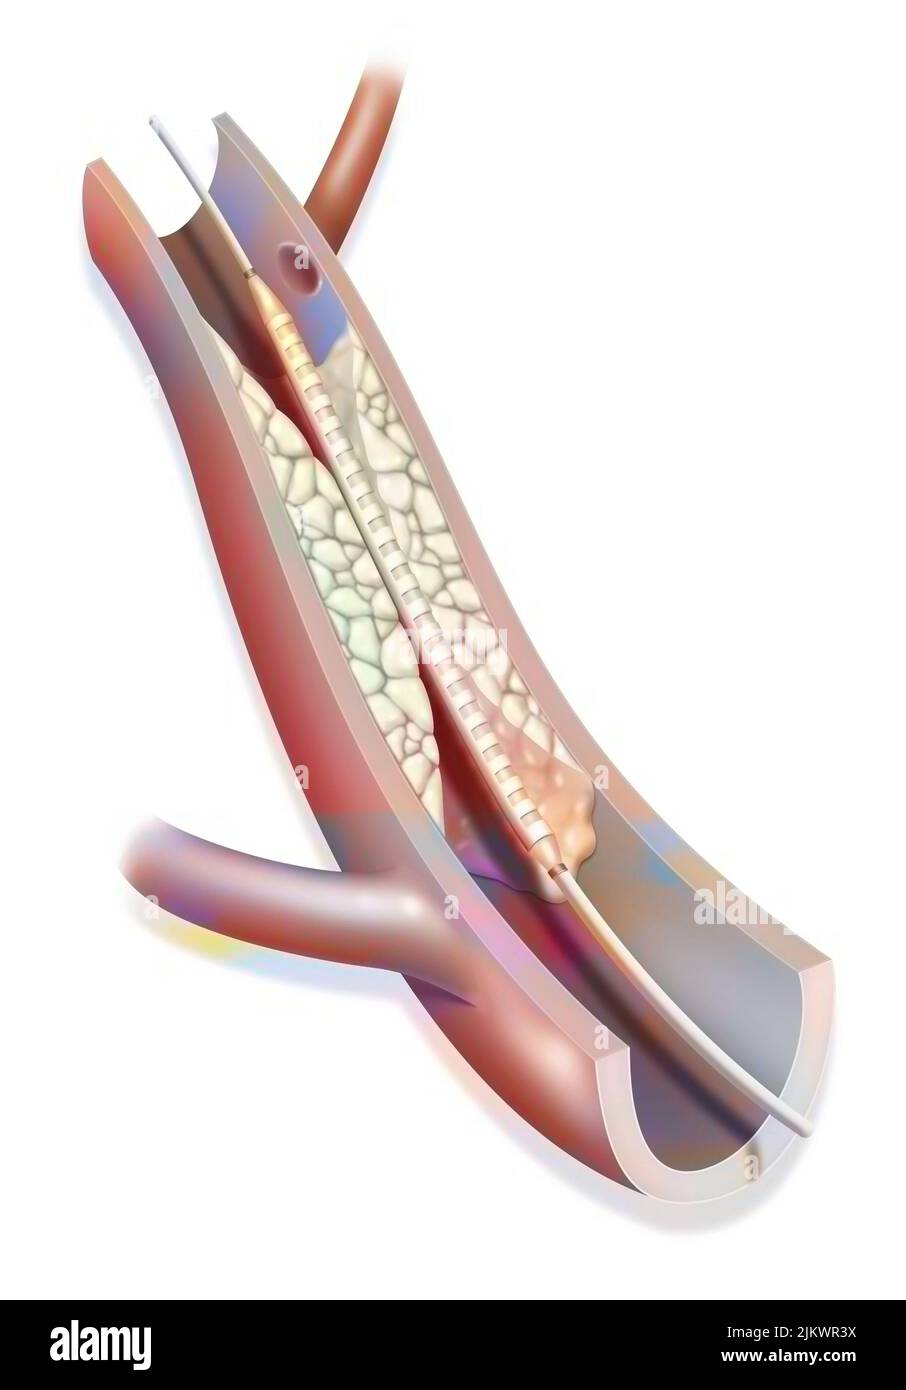 L'angioplastica (stent) aiuta a ripristinare il flusso sanguigno in un'arteria bloccata da un ateroma. Foto Stock